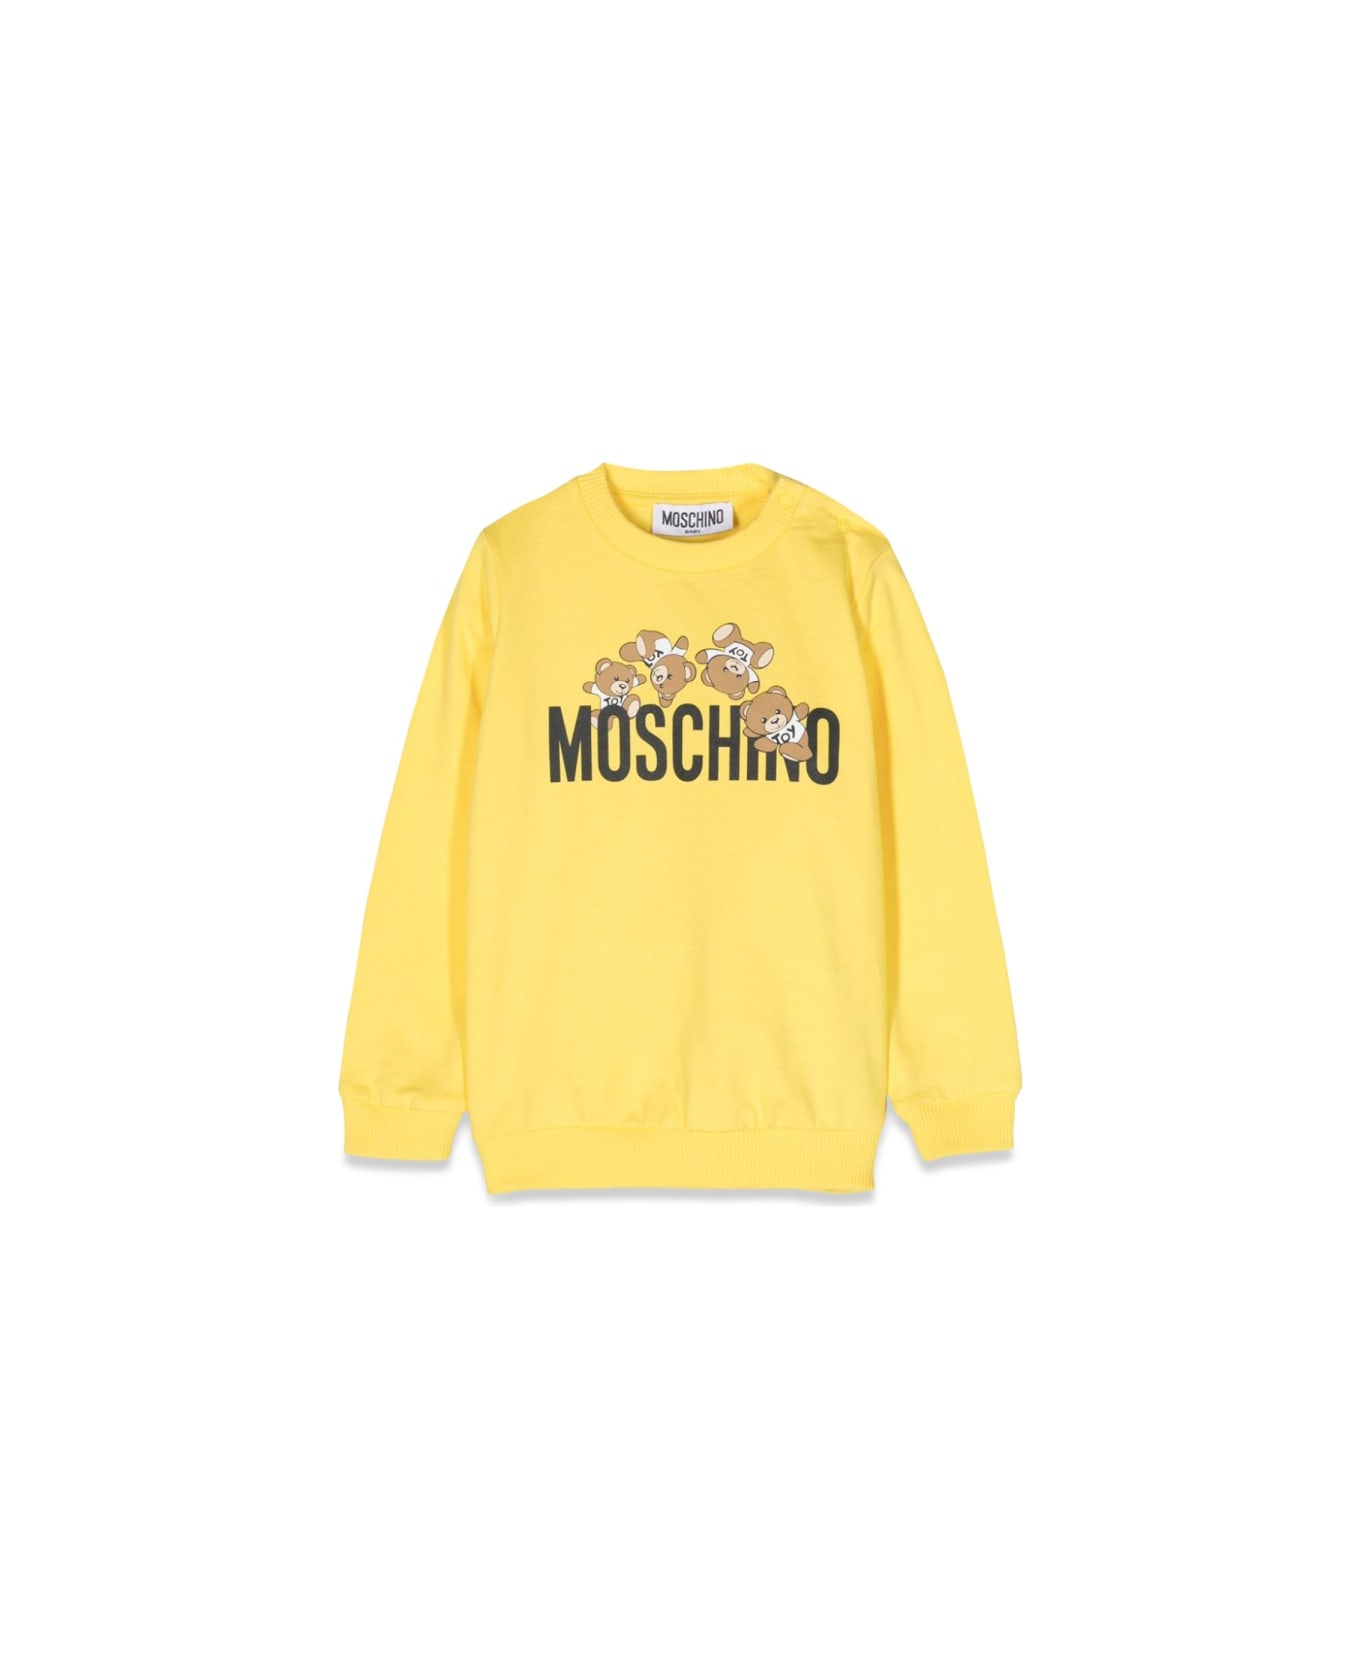 Moschino Sweatshirt - YELLOW